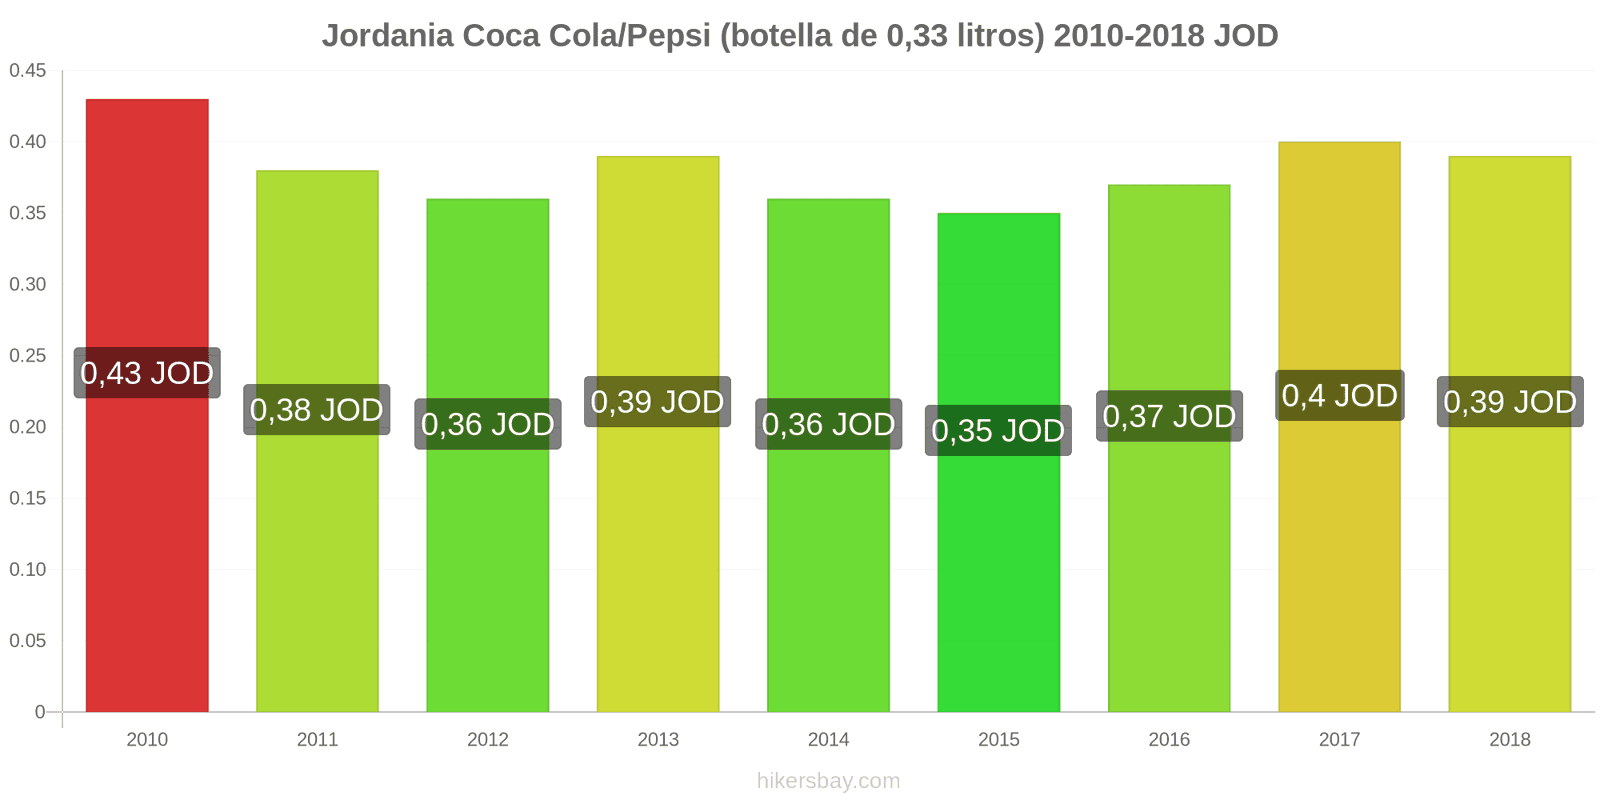 Jordania cambios de precios Coca-Cola/Pepsi (botella de 0.33 litros) hikersbay.com